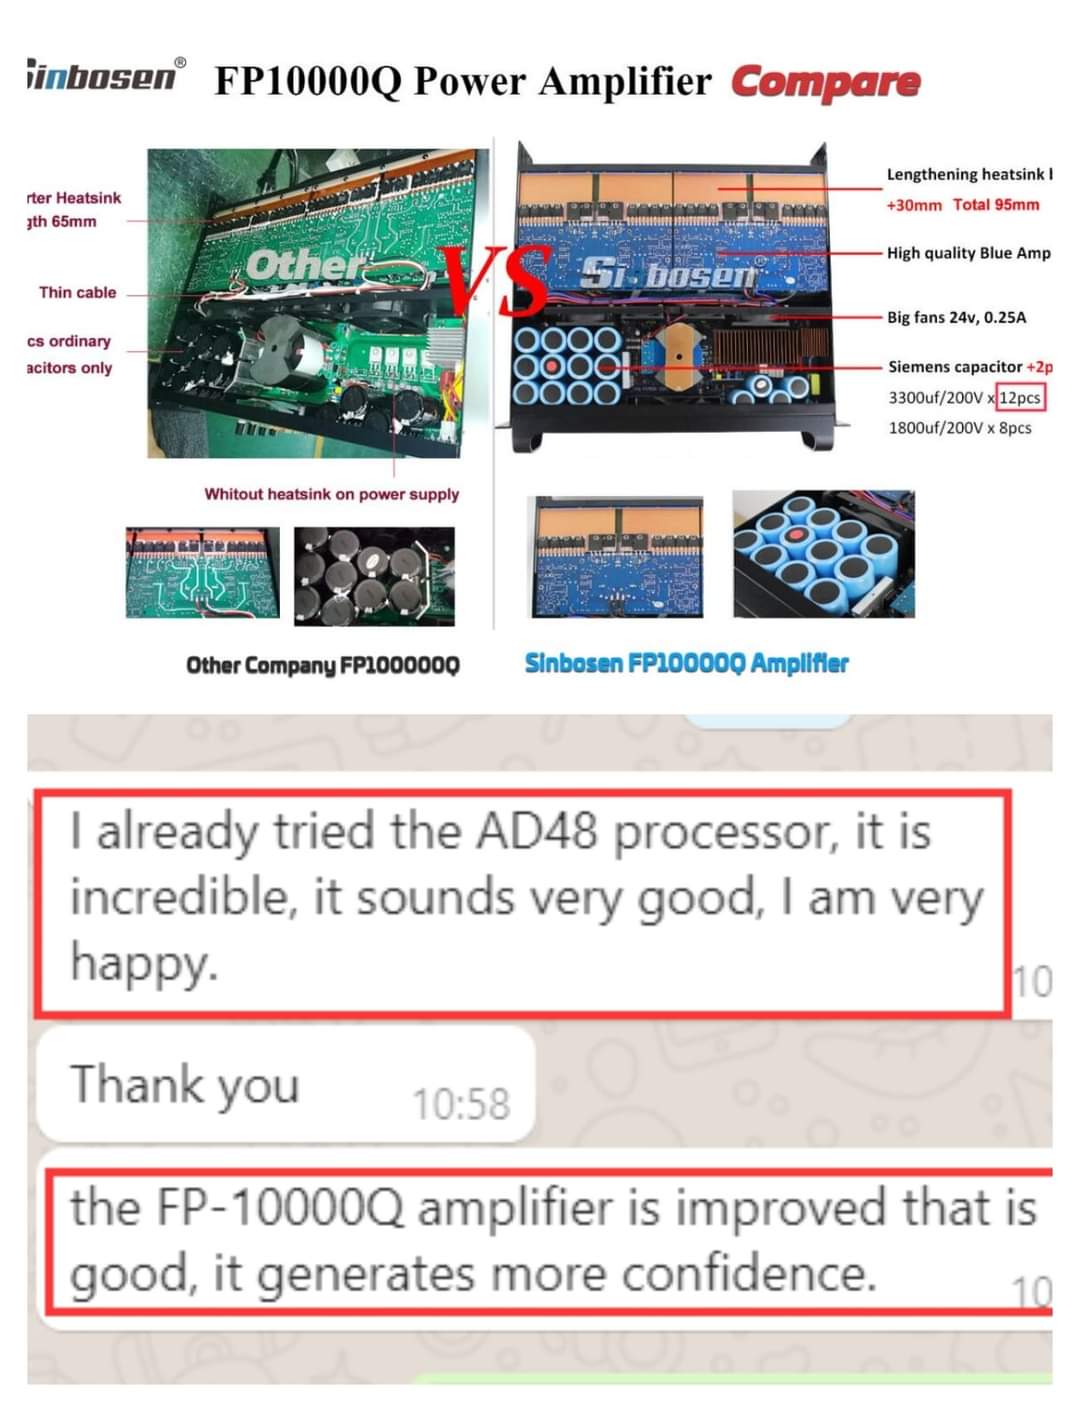 ¿Cómo son los comentarios de los clientes sobre la versión mejorada del amplificador de potencia FP10000Q de sinbosenaudio?